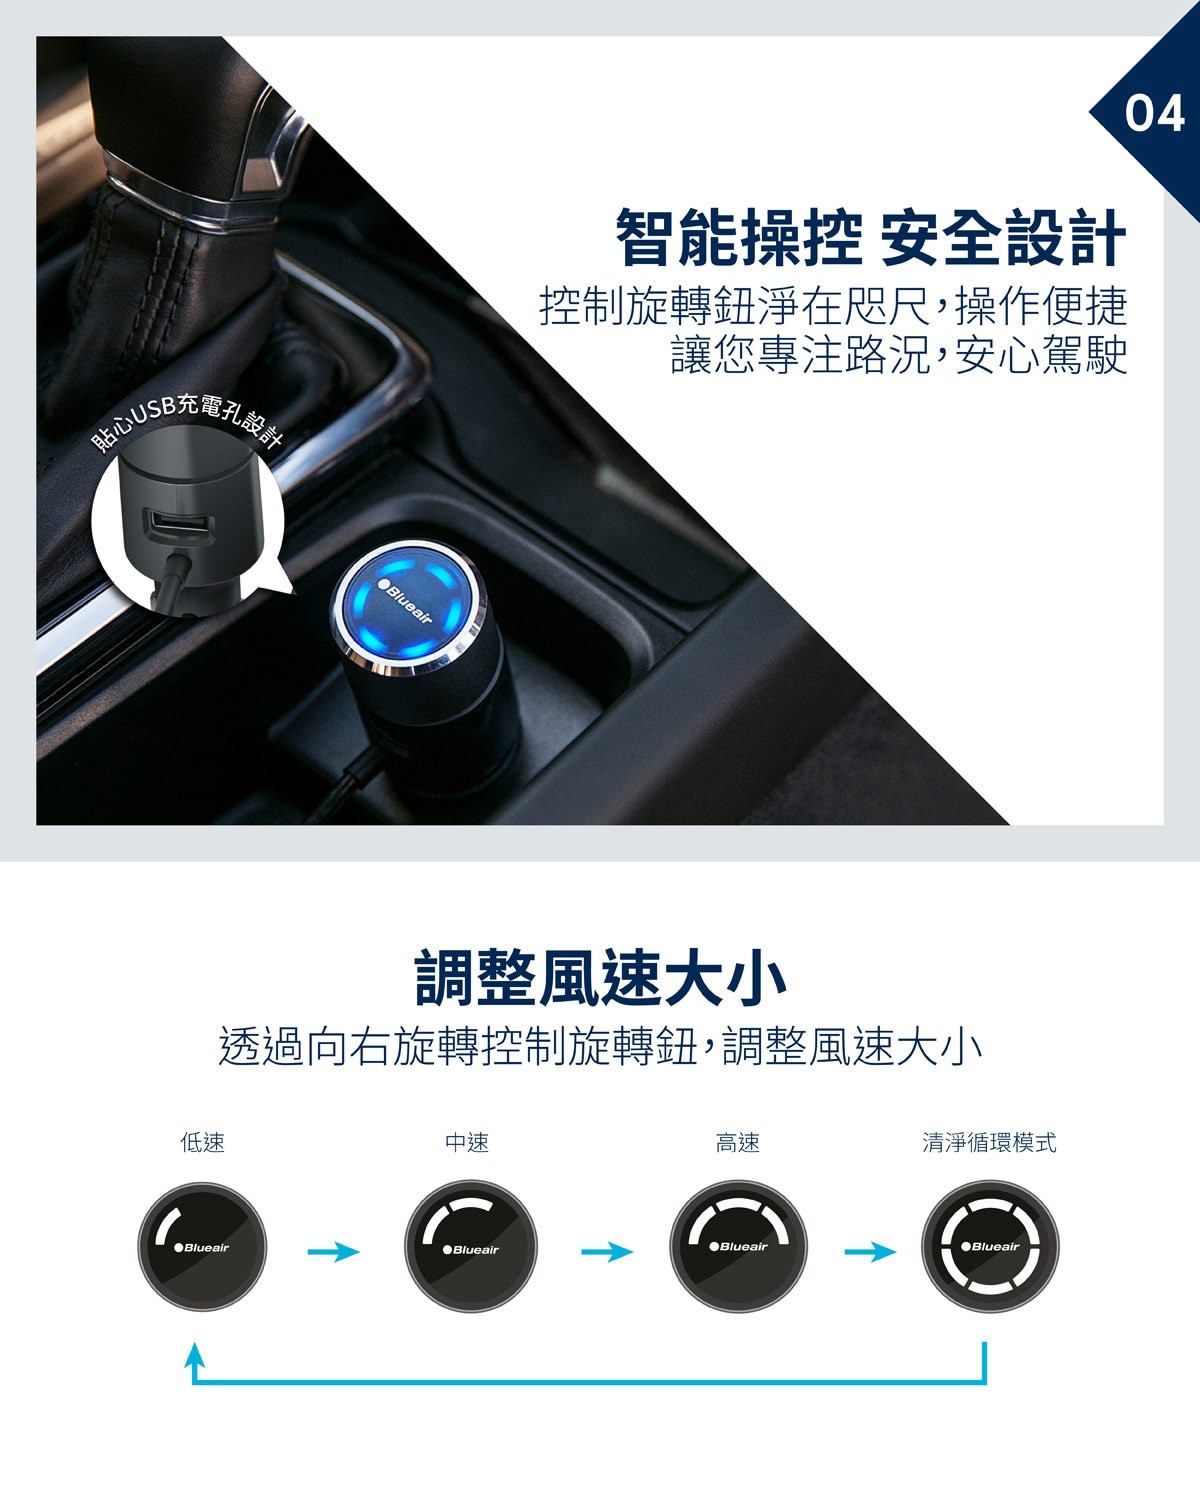 Blueair 車用空氣清淨機(P1)與濾網，智能操控，安全設計，控制旋轉鈕淨在咫尺，操作便捷，安心駕駛；透過向右旋轉控制旋轉鈕，調整風速大小。